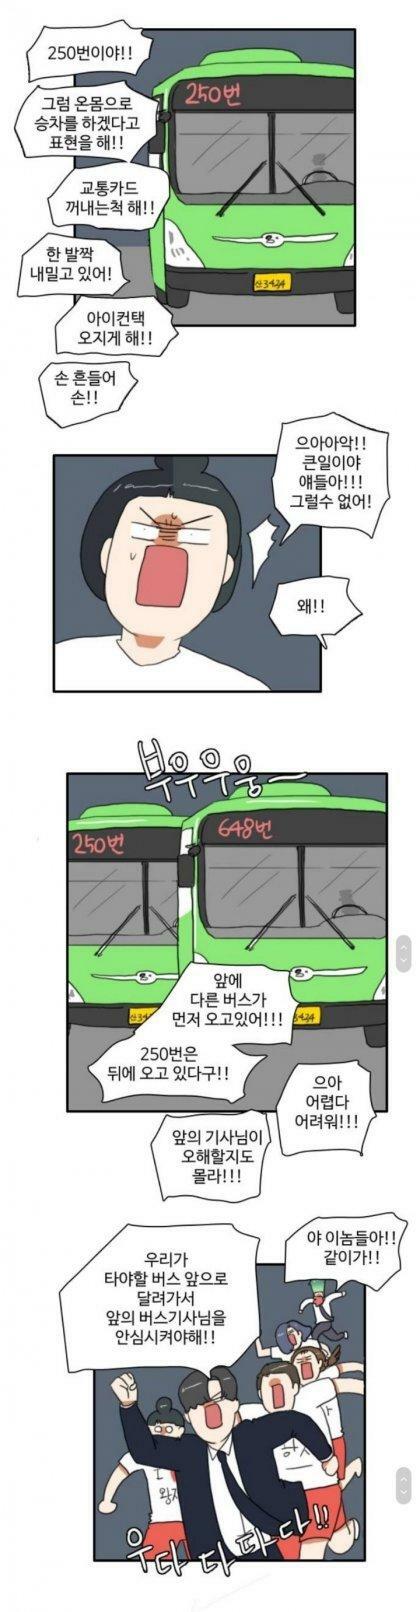 한국인이 버스타는 법